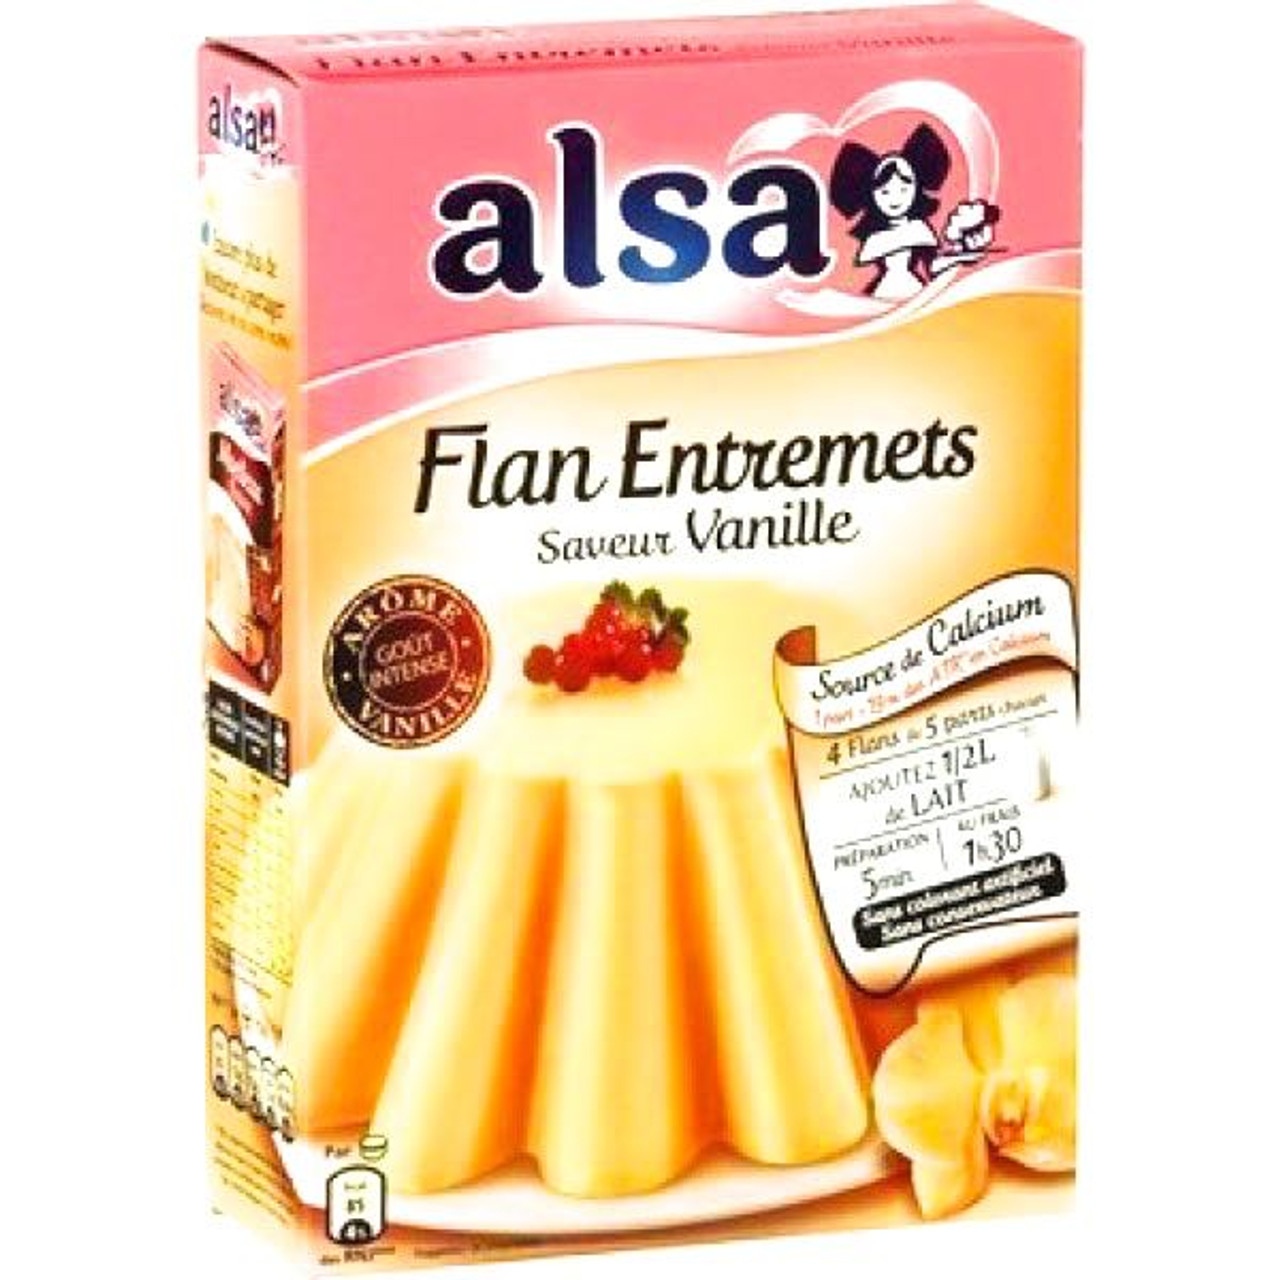 Alsa Vanilla Custard Mix